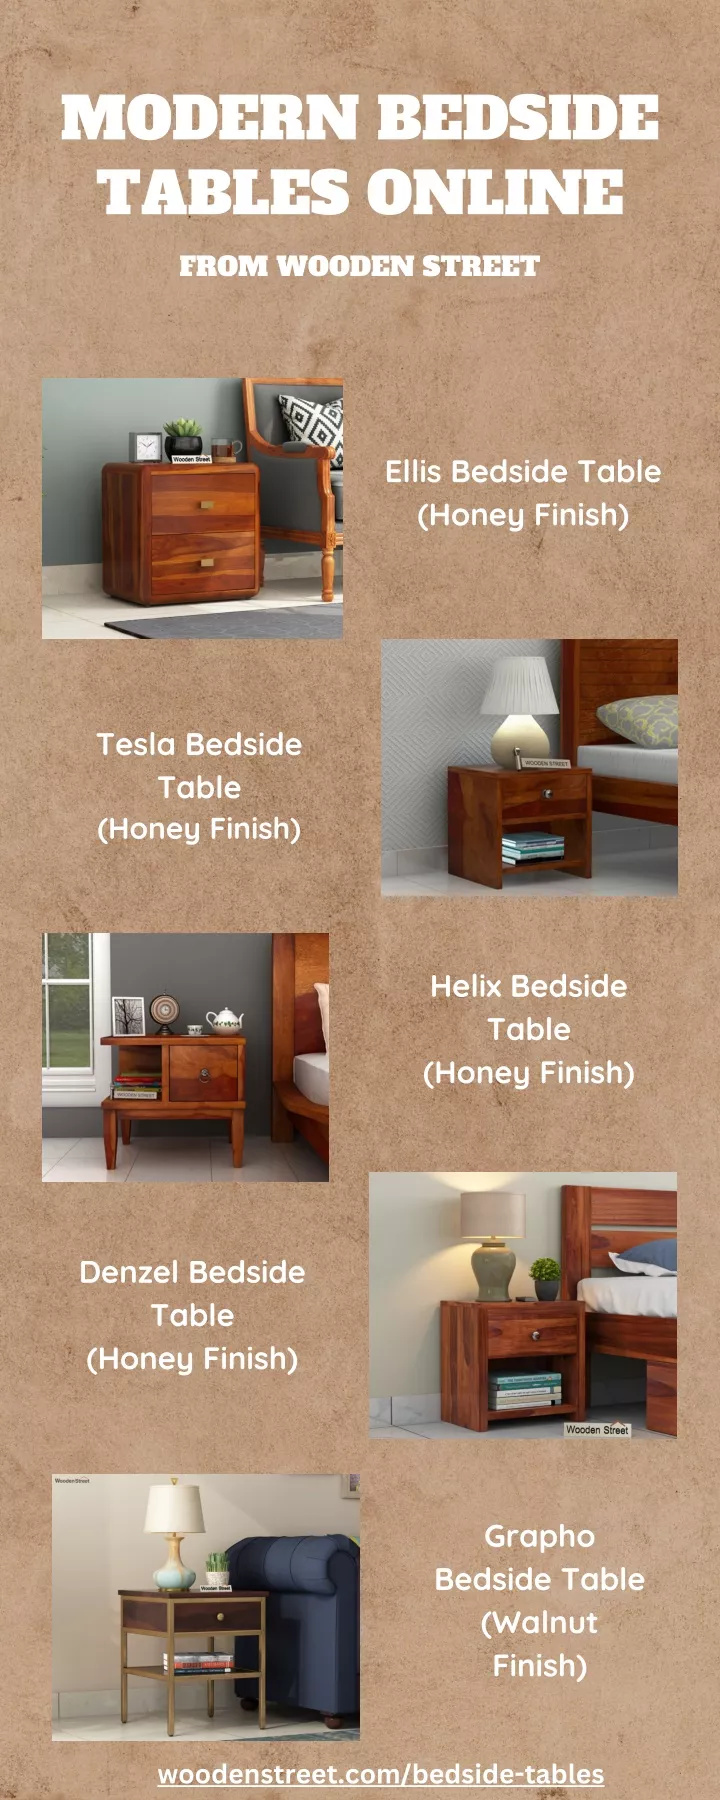 modern bedside tables online